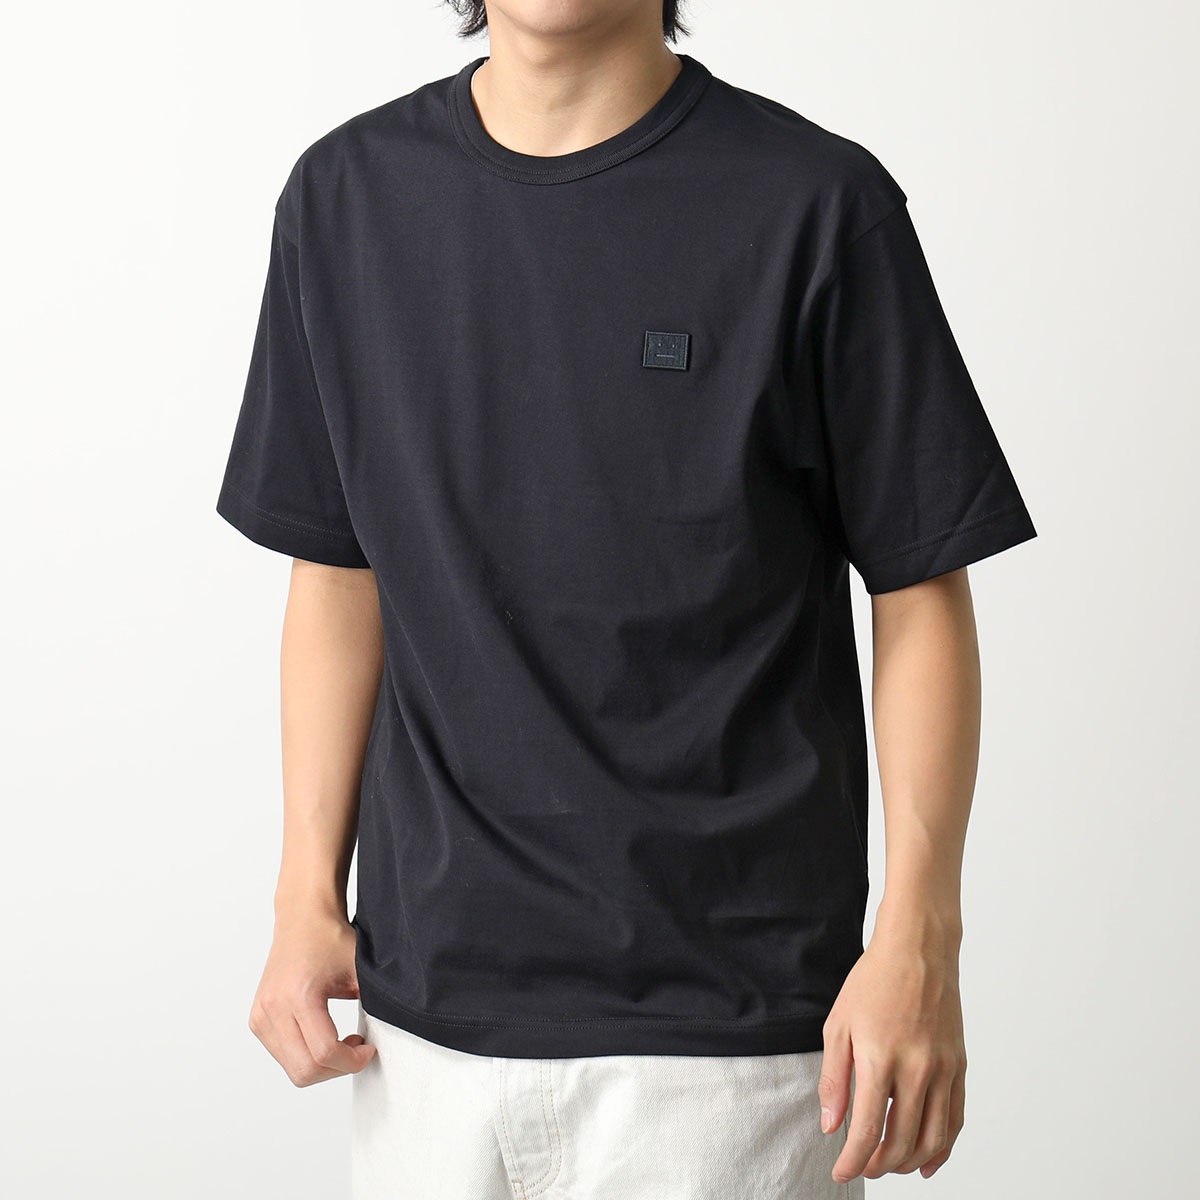 Acne Studios アクネストゥディオズ Tシャツ Face フェイス CL0206 FA-UX-TSHI000244 メンズ  リラックスフィット 半袖 カットソー クルーネック カラー2色